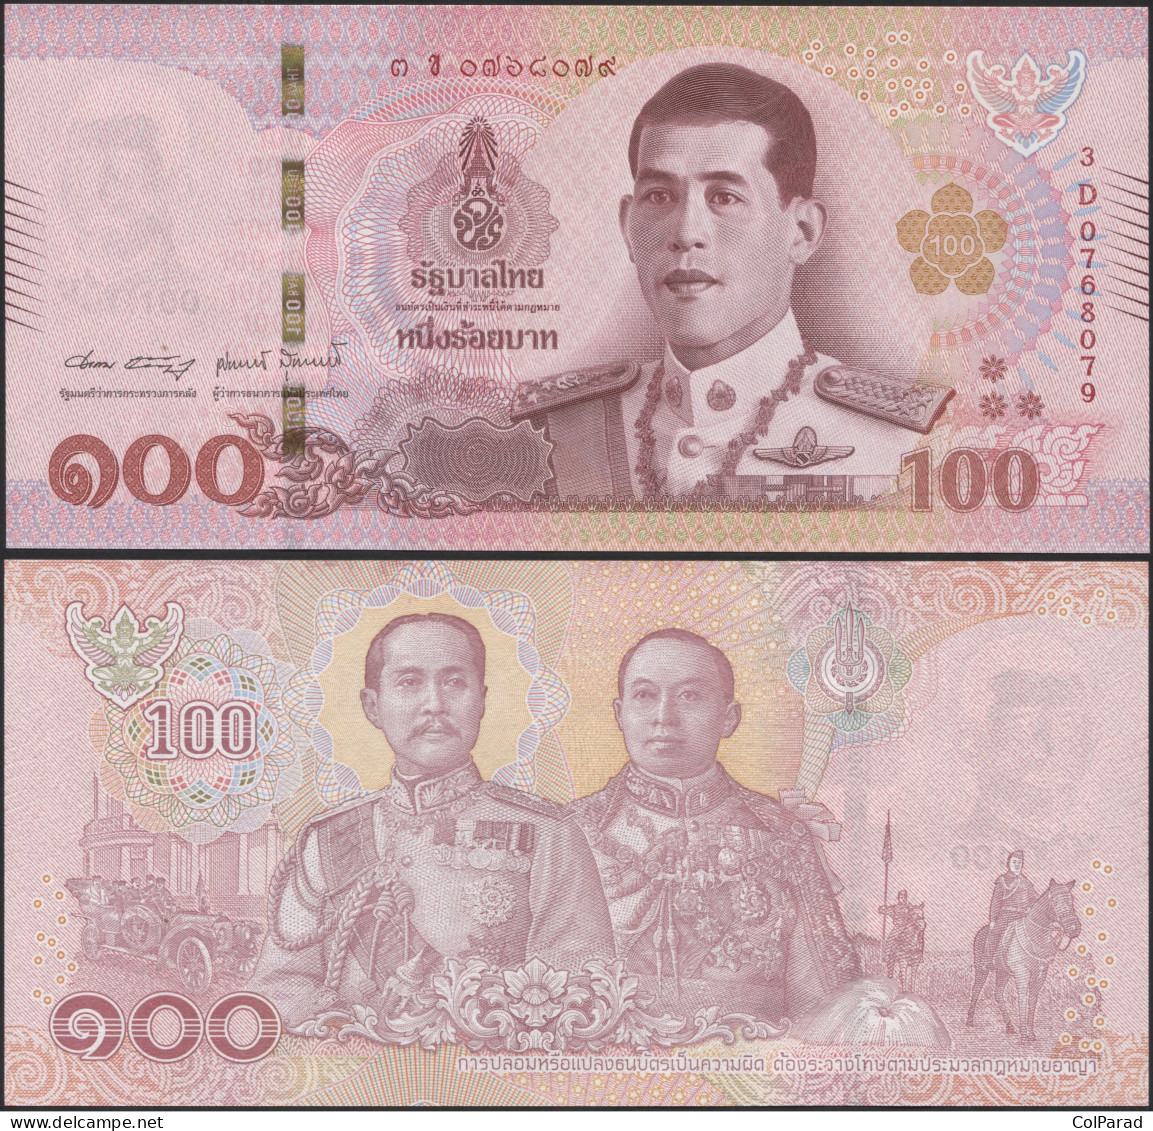 THAILAND 100 BAHT - ND (2020) - Paper Unc - P.137e Banknote - Thailand